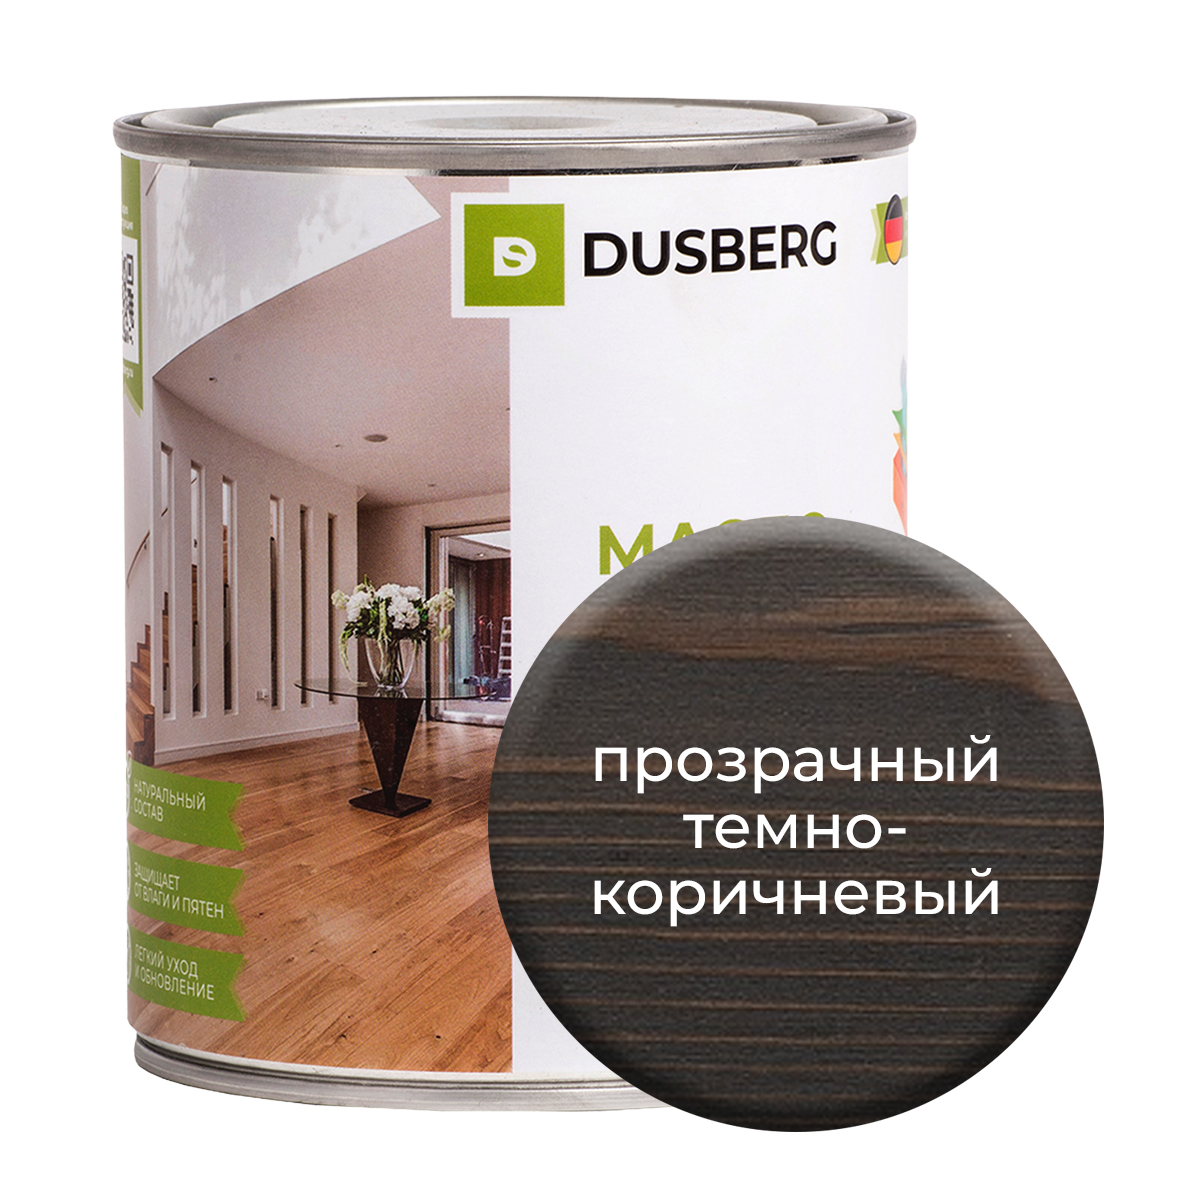 Масло Dusberg для стен на бесцветной основе, 750 мл Прозрачный темно-коричневый василий шухаев искусство судьба наследие